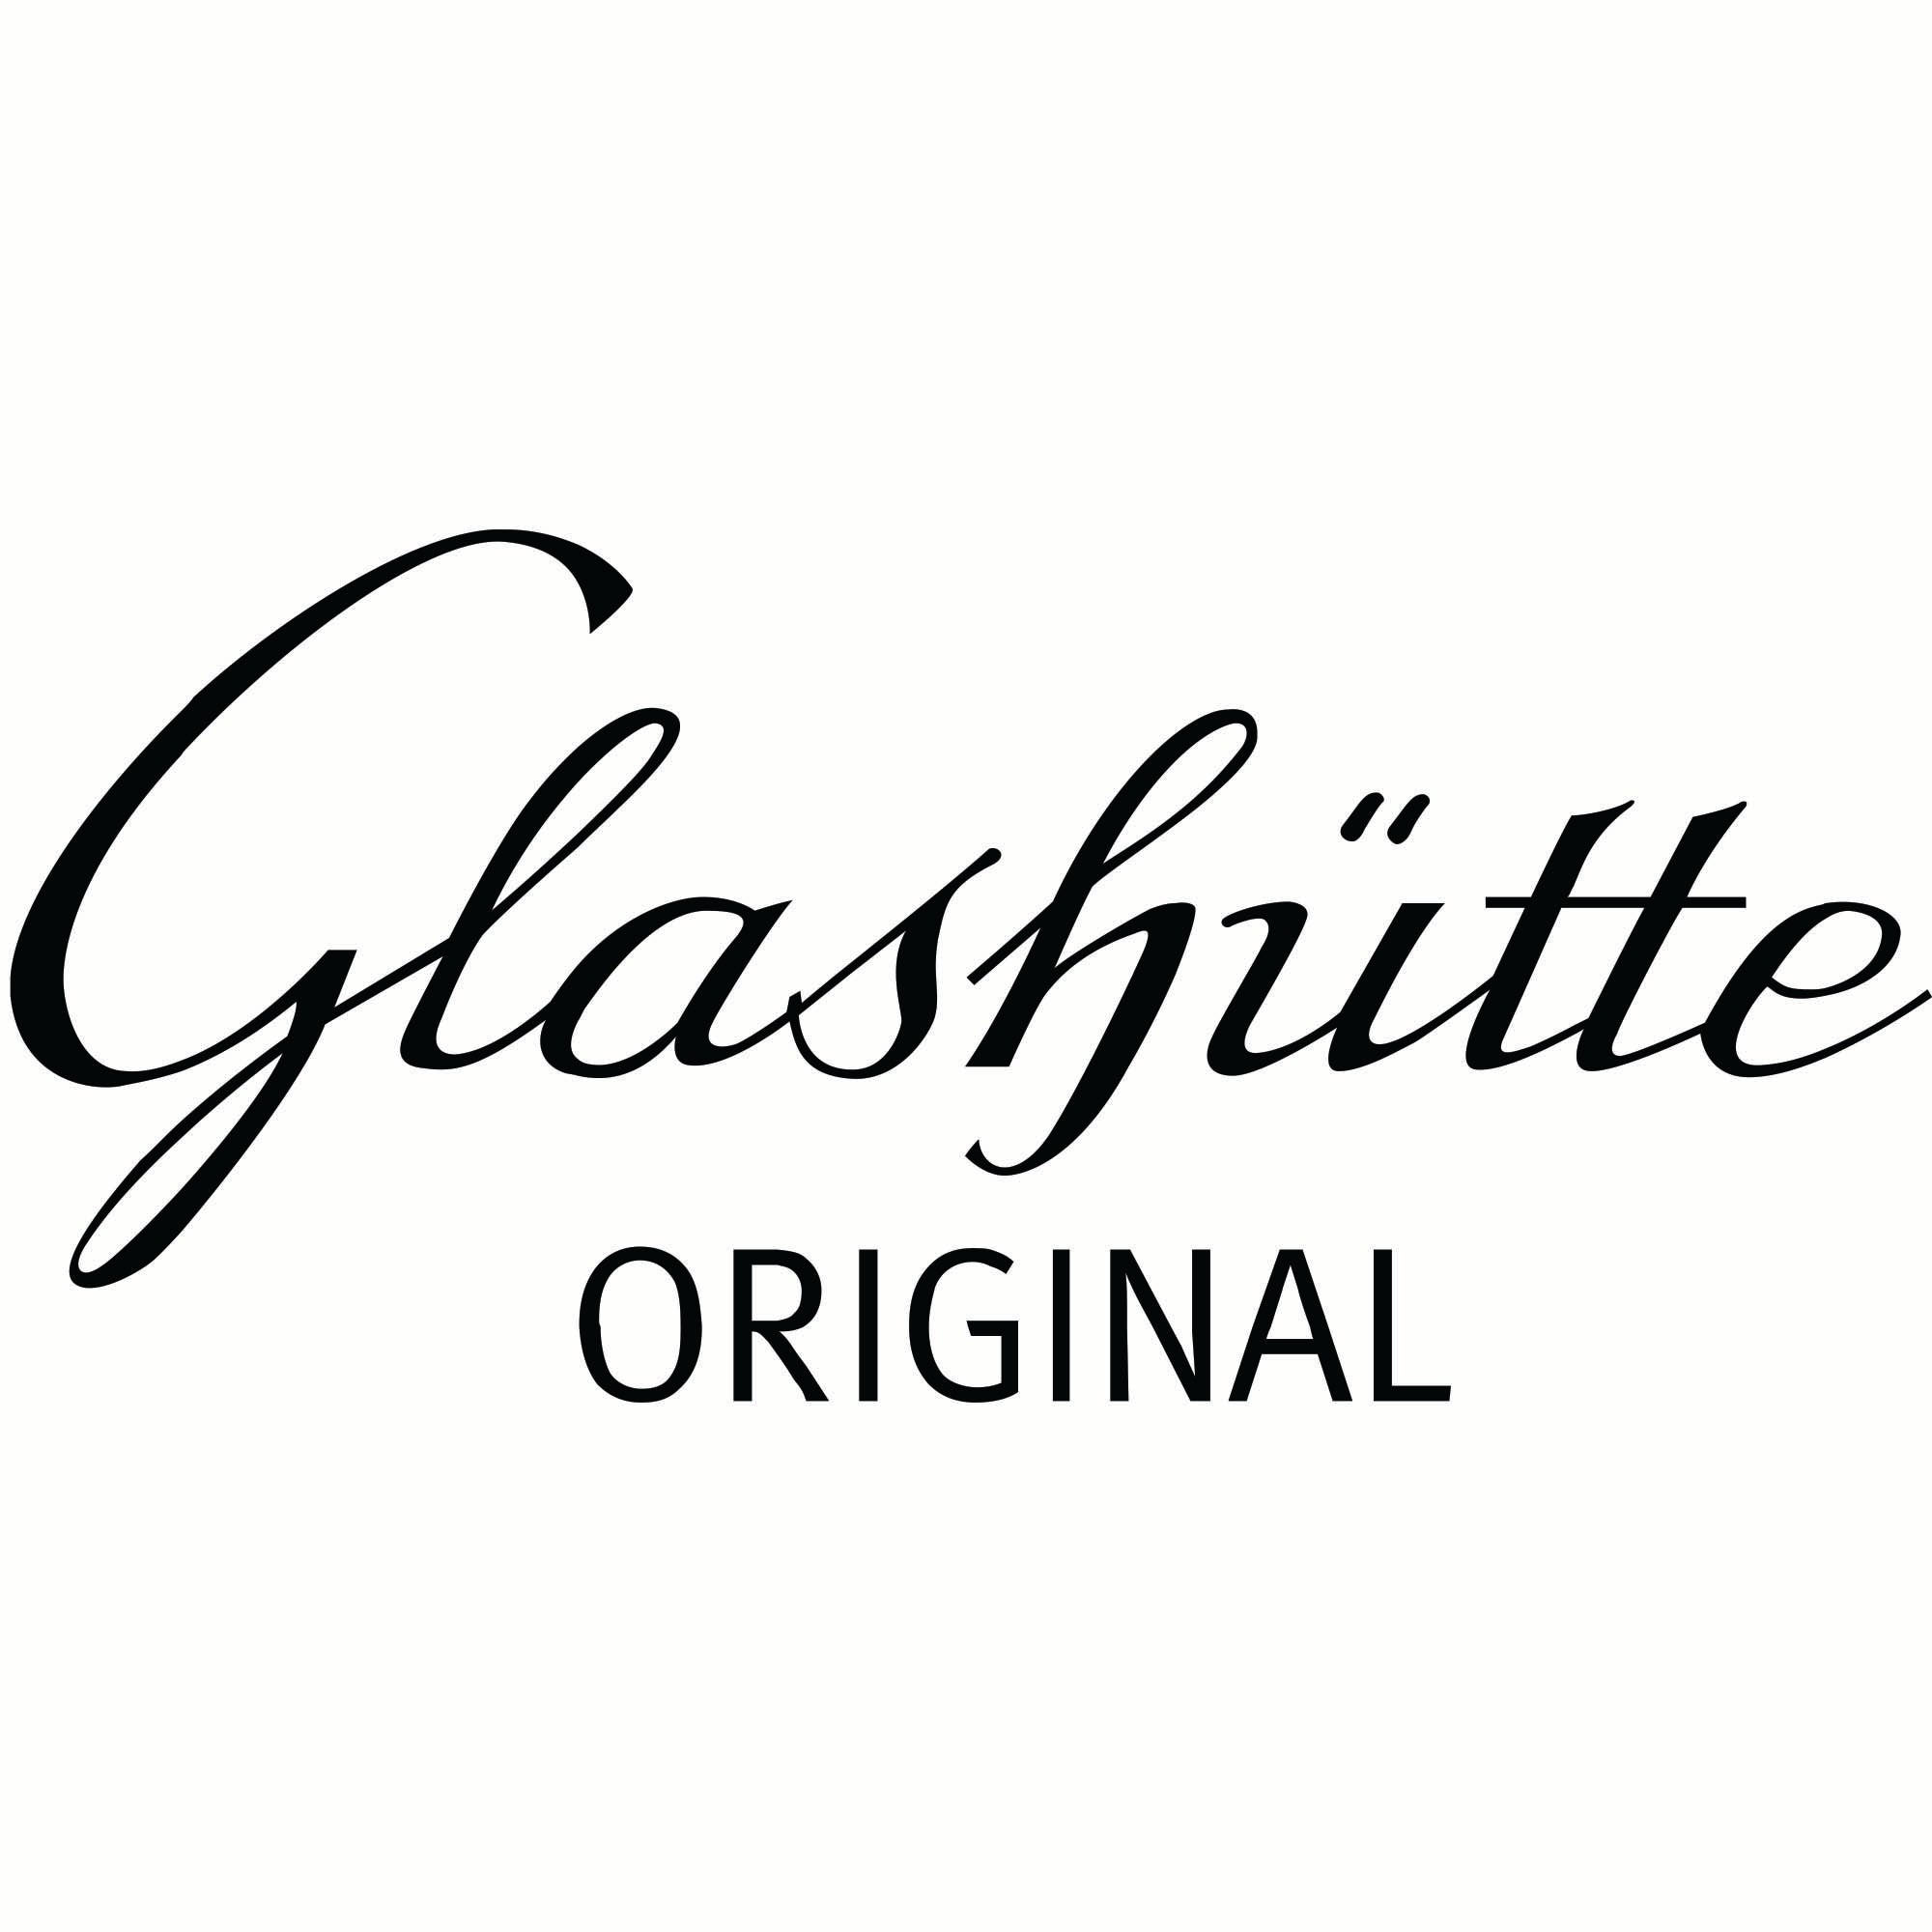 Glasshuette Logo